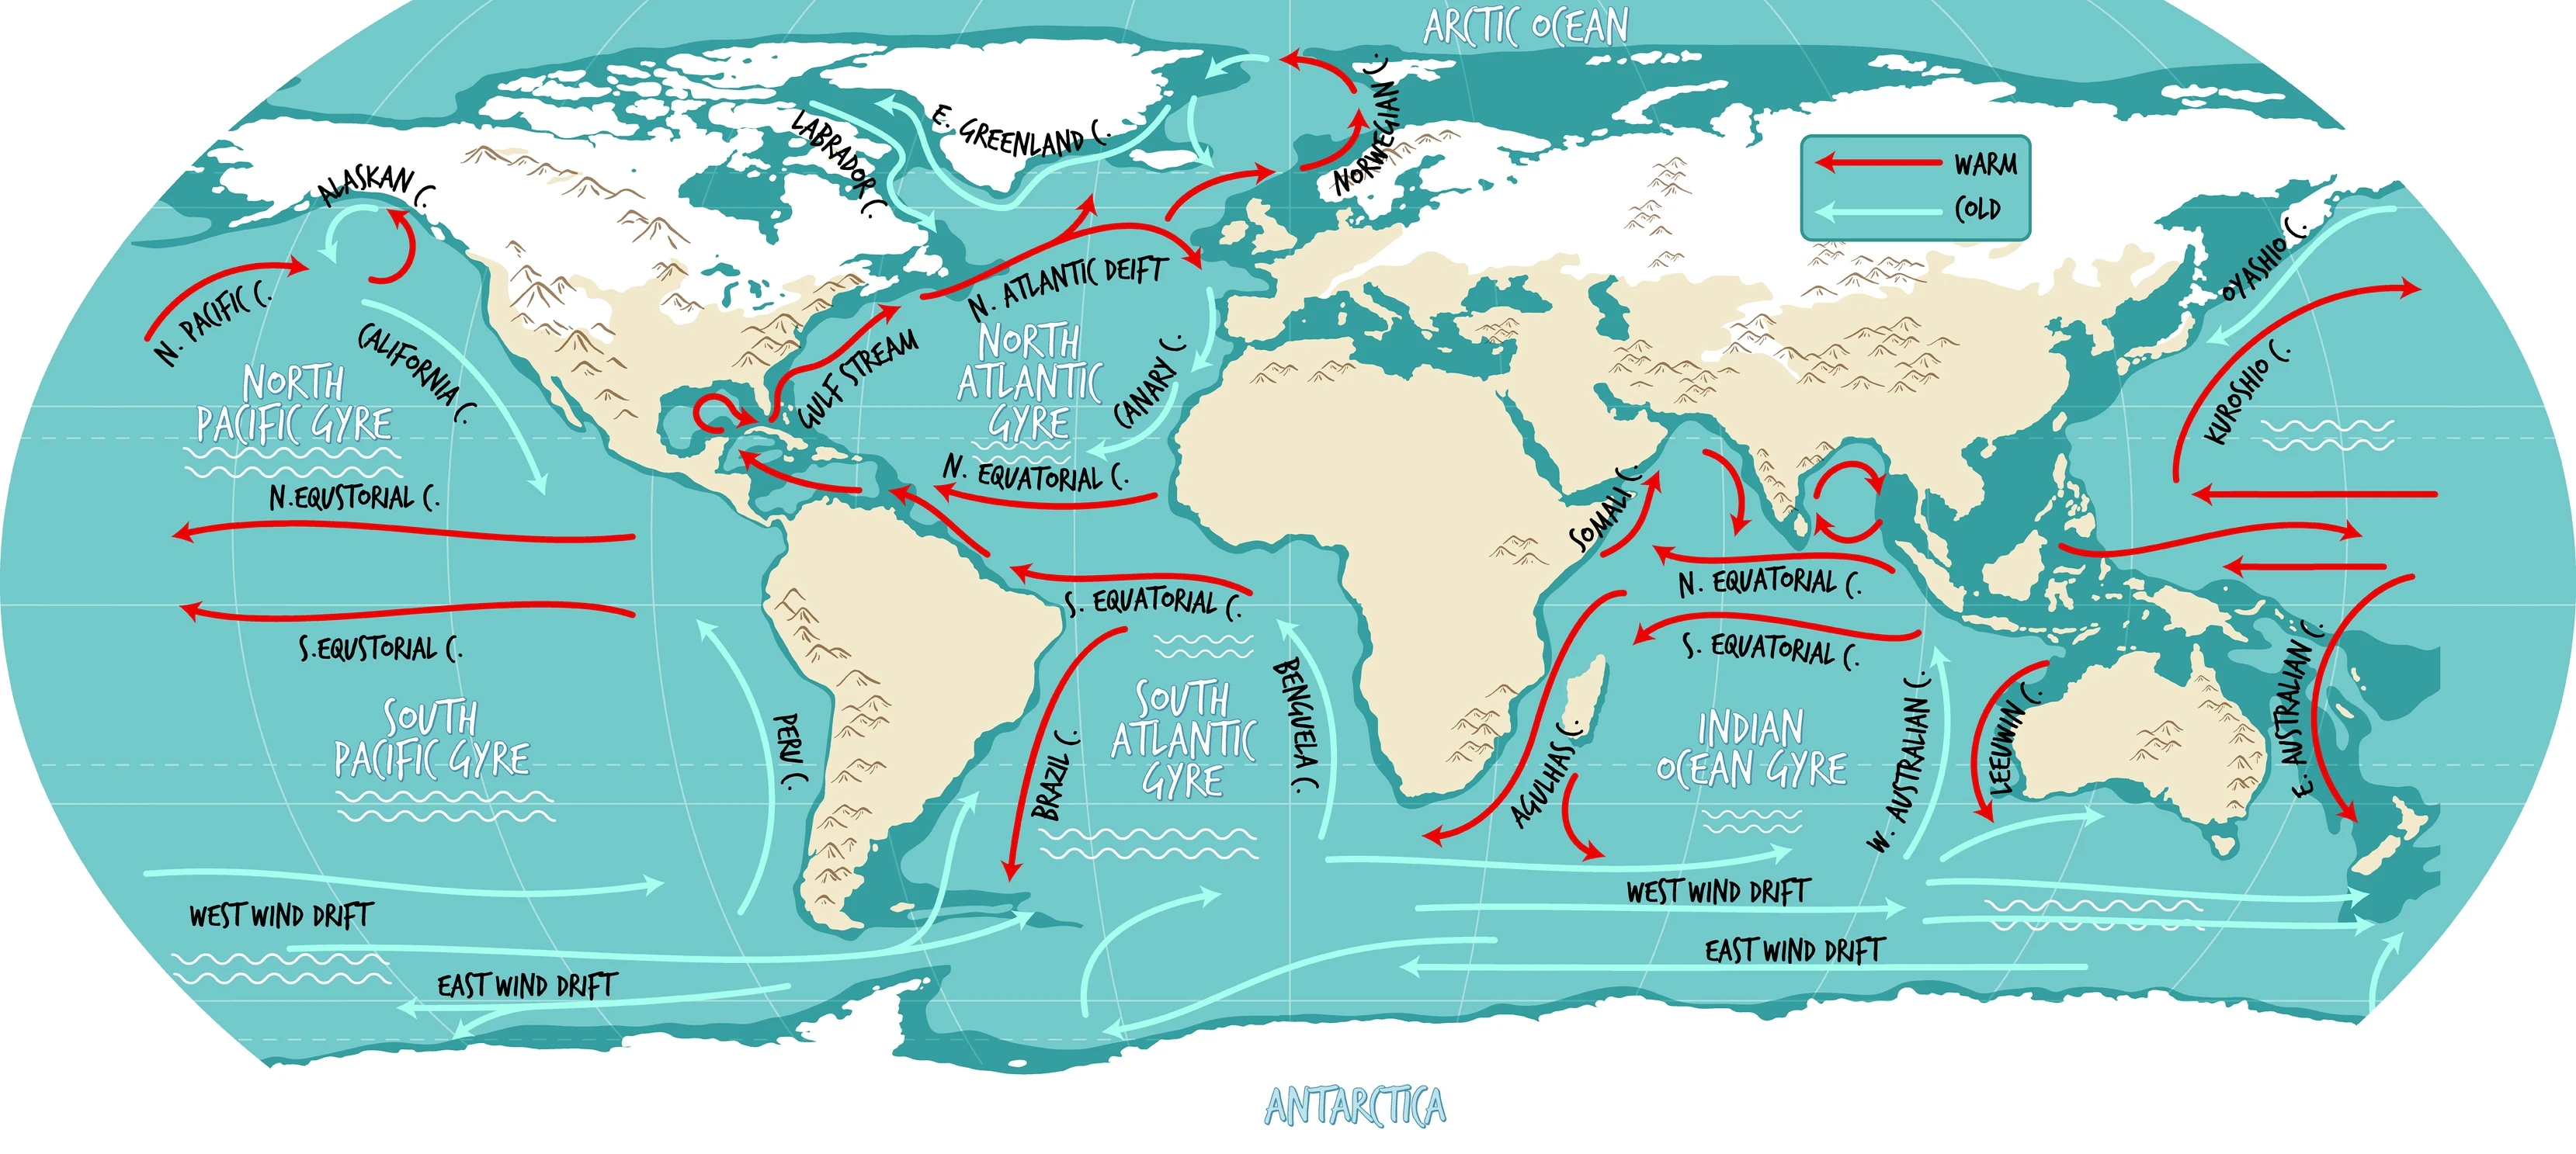 Иллюстративная карта мира океанических течений с названиями.